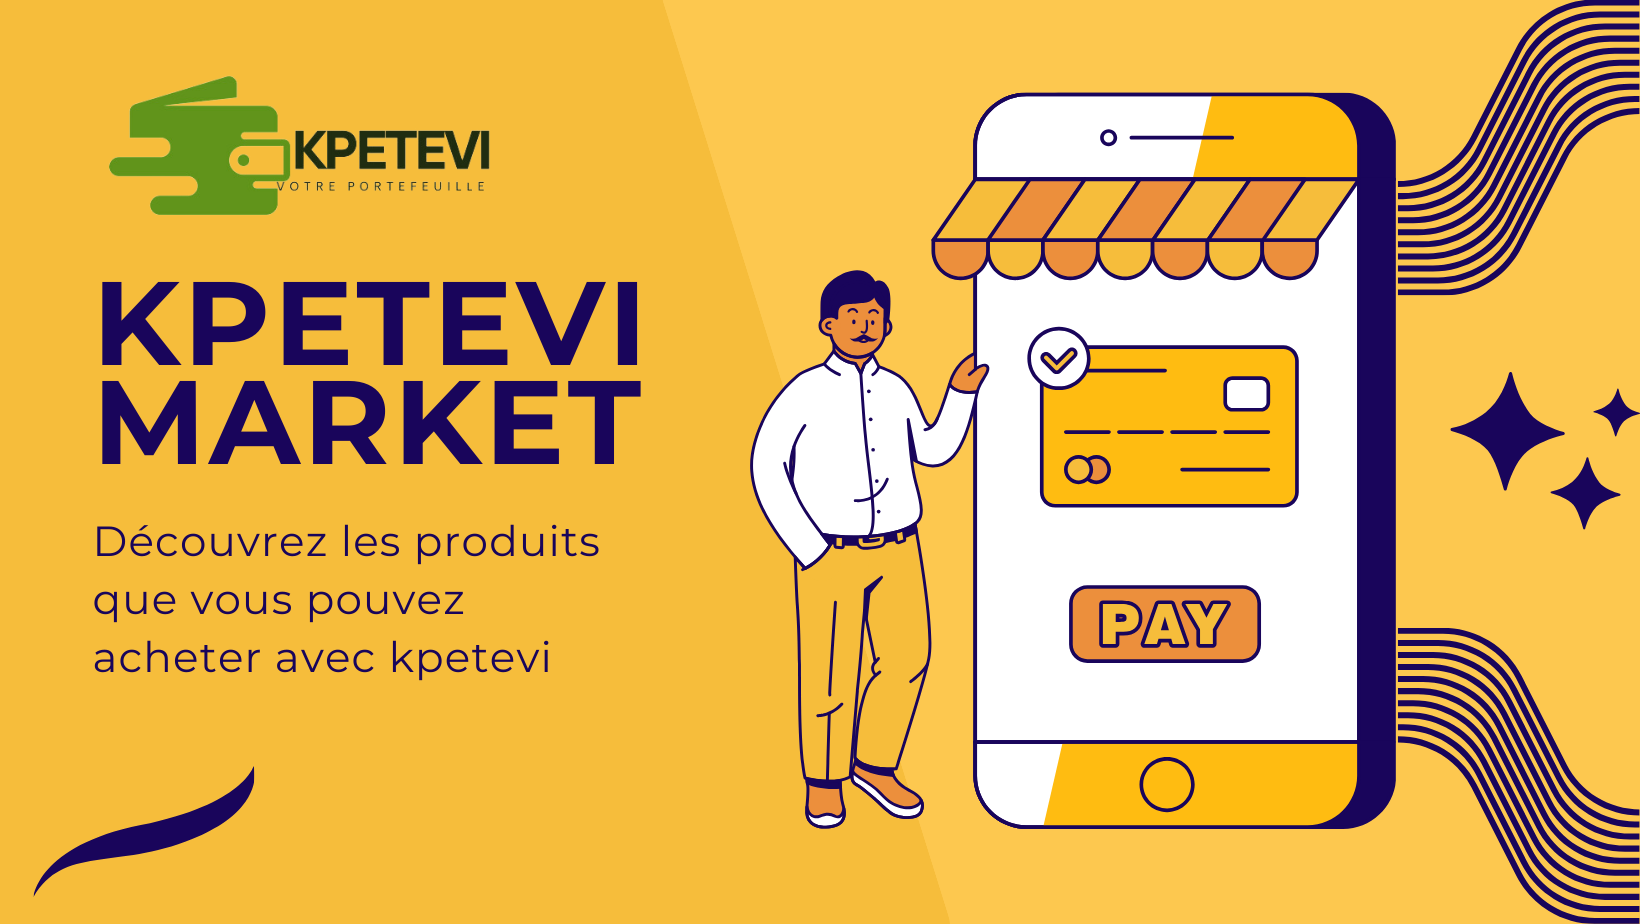 Kpetevi Market